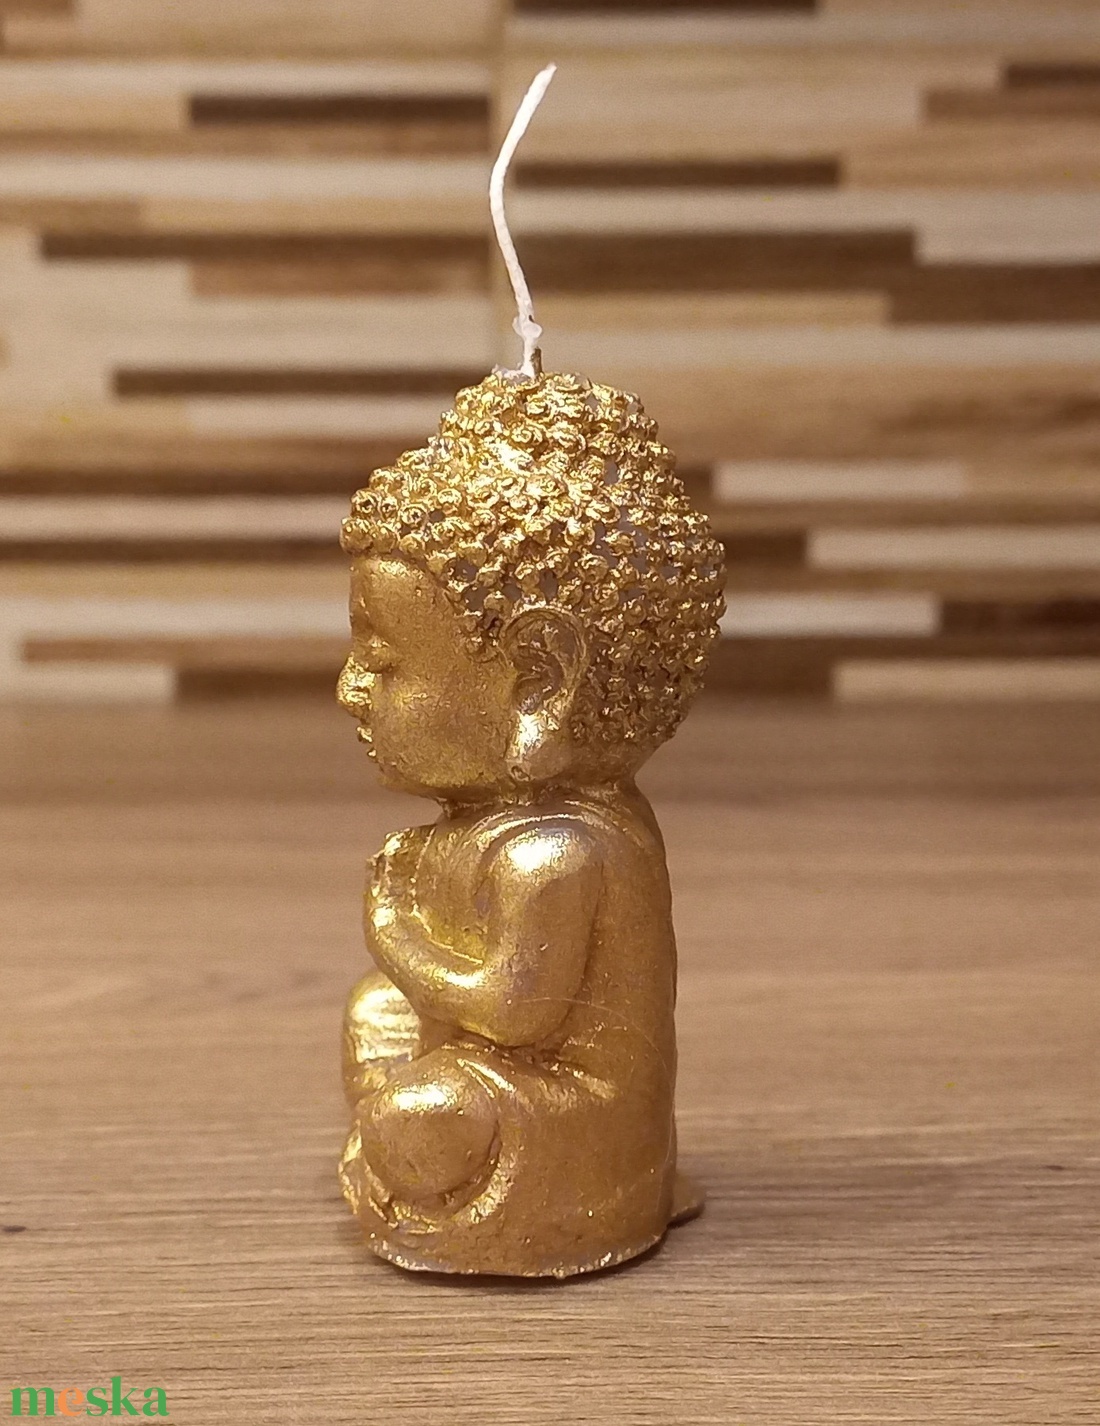 Festett Buddha gyertya - otthon & lakás - gyertya, illat, aroma - gyertya - Meska.hu